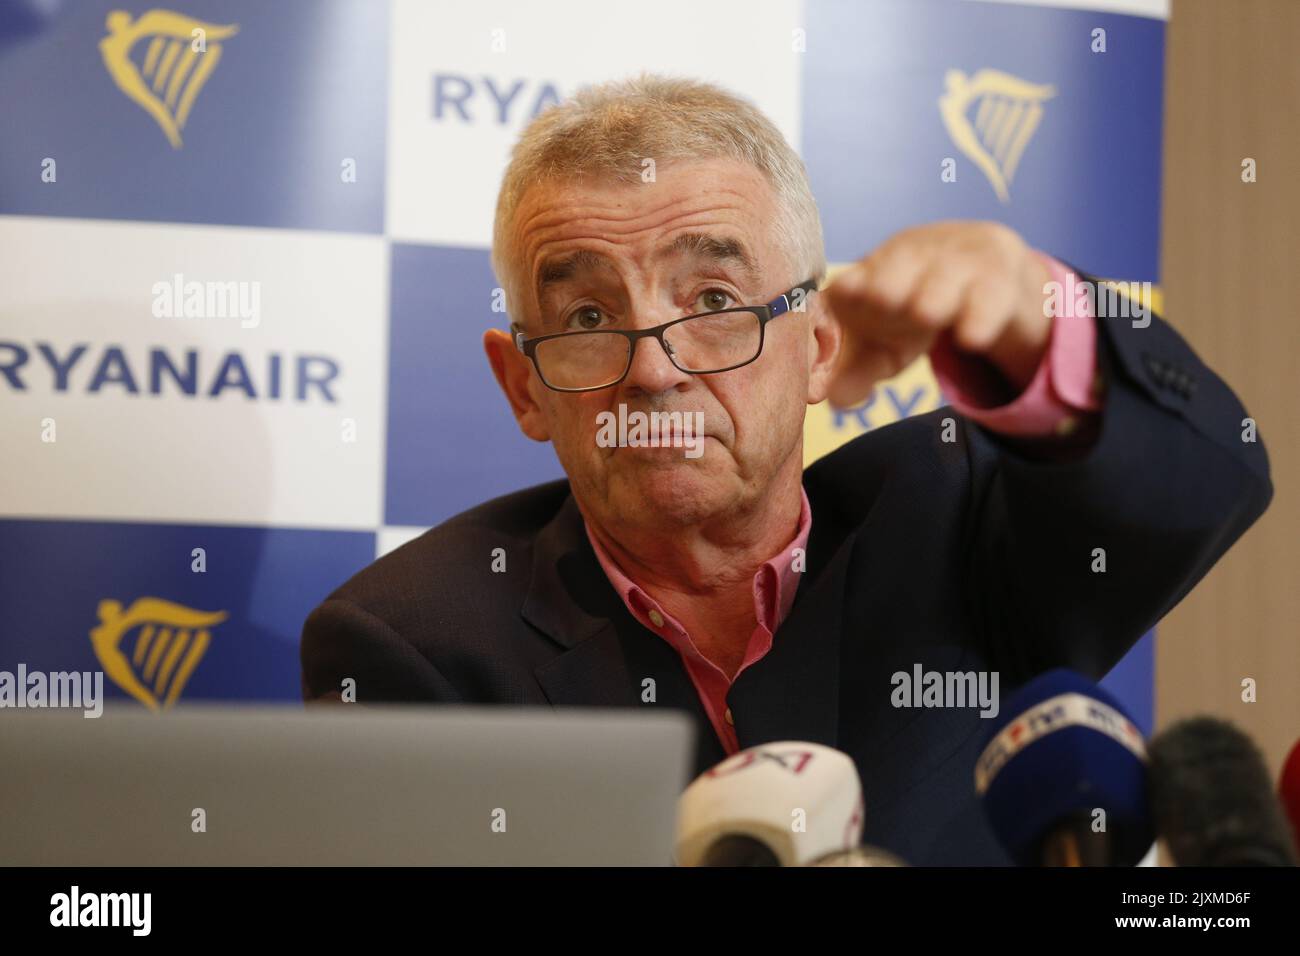 Michael O'Leary, PDG de Ryanair, a pris la photo d'une conférence de presse de la compagnie aérienne irlandaise à bas prix Ryanair, le mercredi 07 septembre 2022 à Bruxelles. Il n'y aura plus d'avion à Zaventem de 29 octobre pendant la saison d'hiver. BELGA PHOTO NICOLAS MATERLINCK Banque D'Images